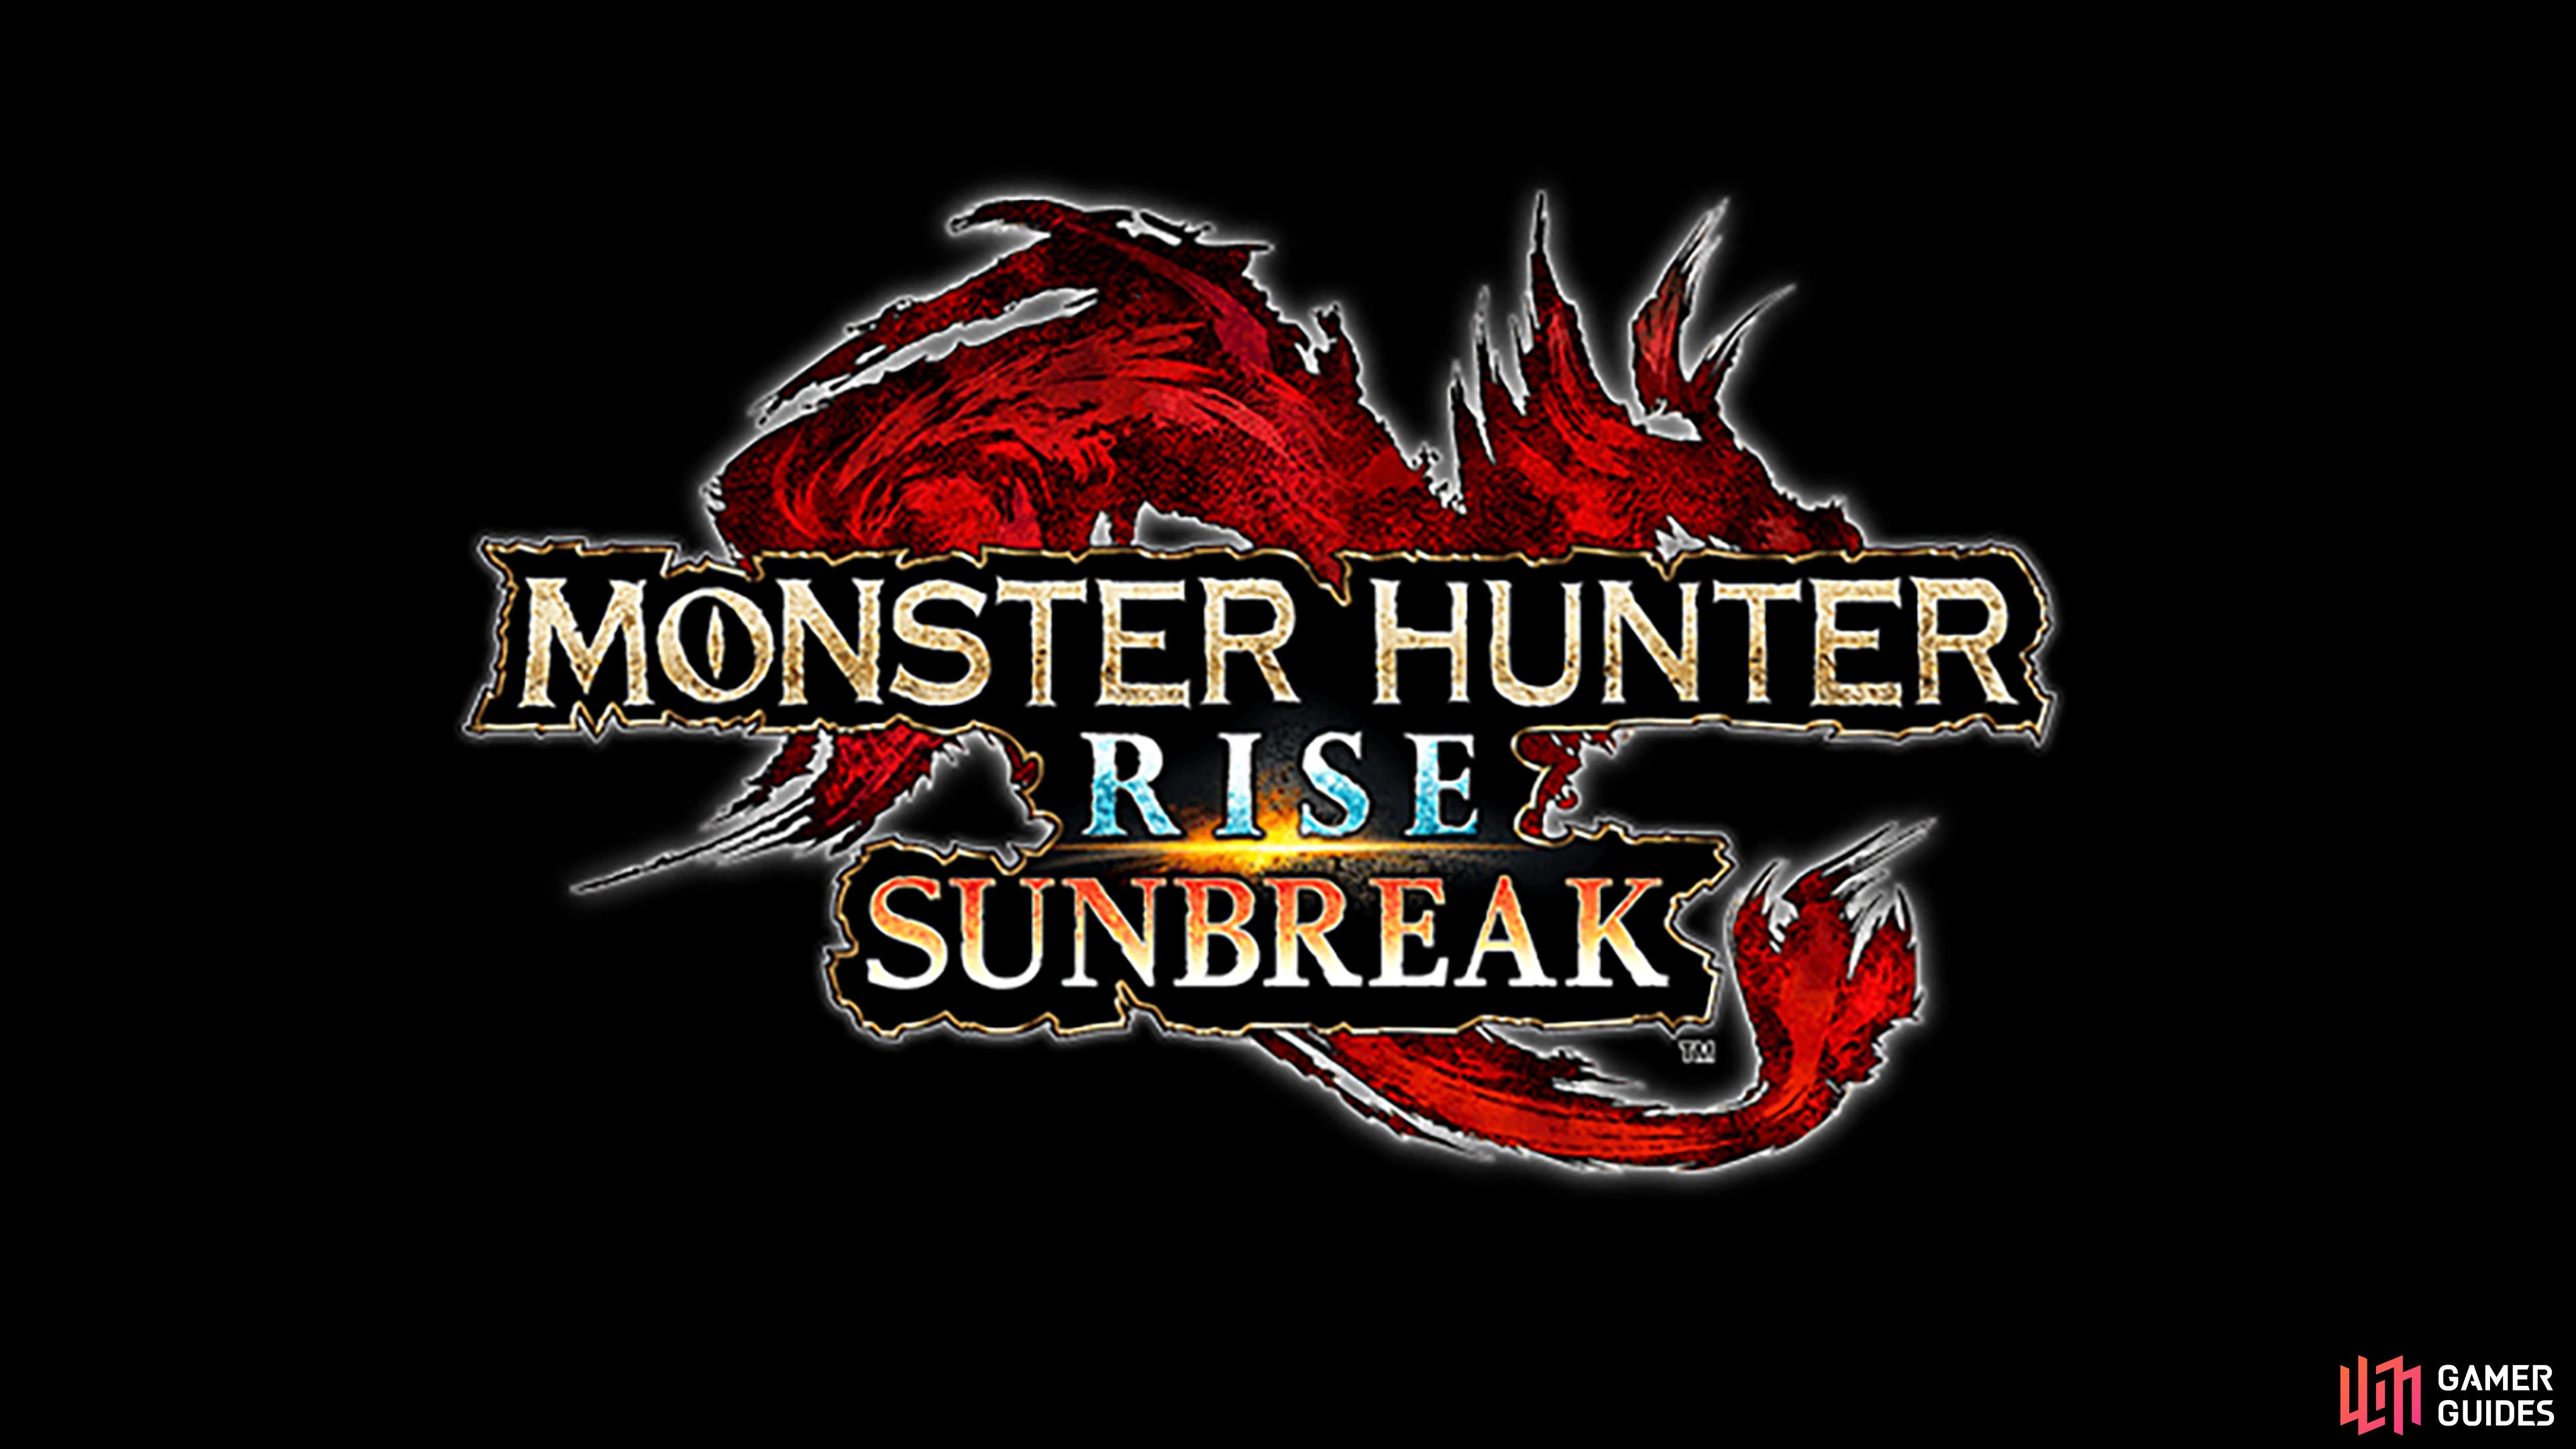 Monster Hunter Rise: Sunbreak is the new expansion to Monster Hunter Rise.